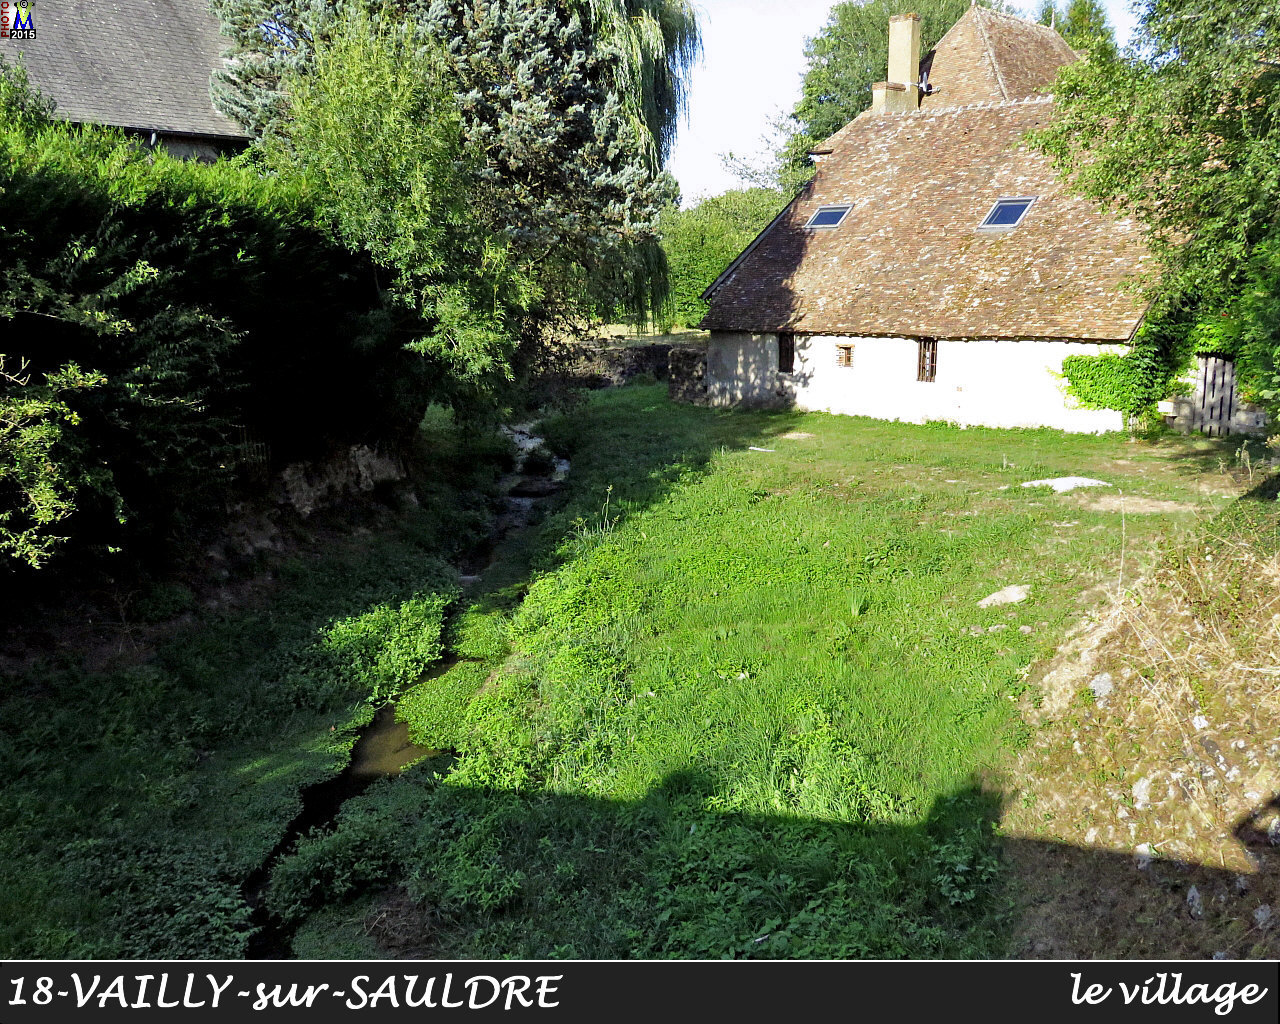 18VAILLY-SAULDRE_village_102.jpg